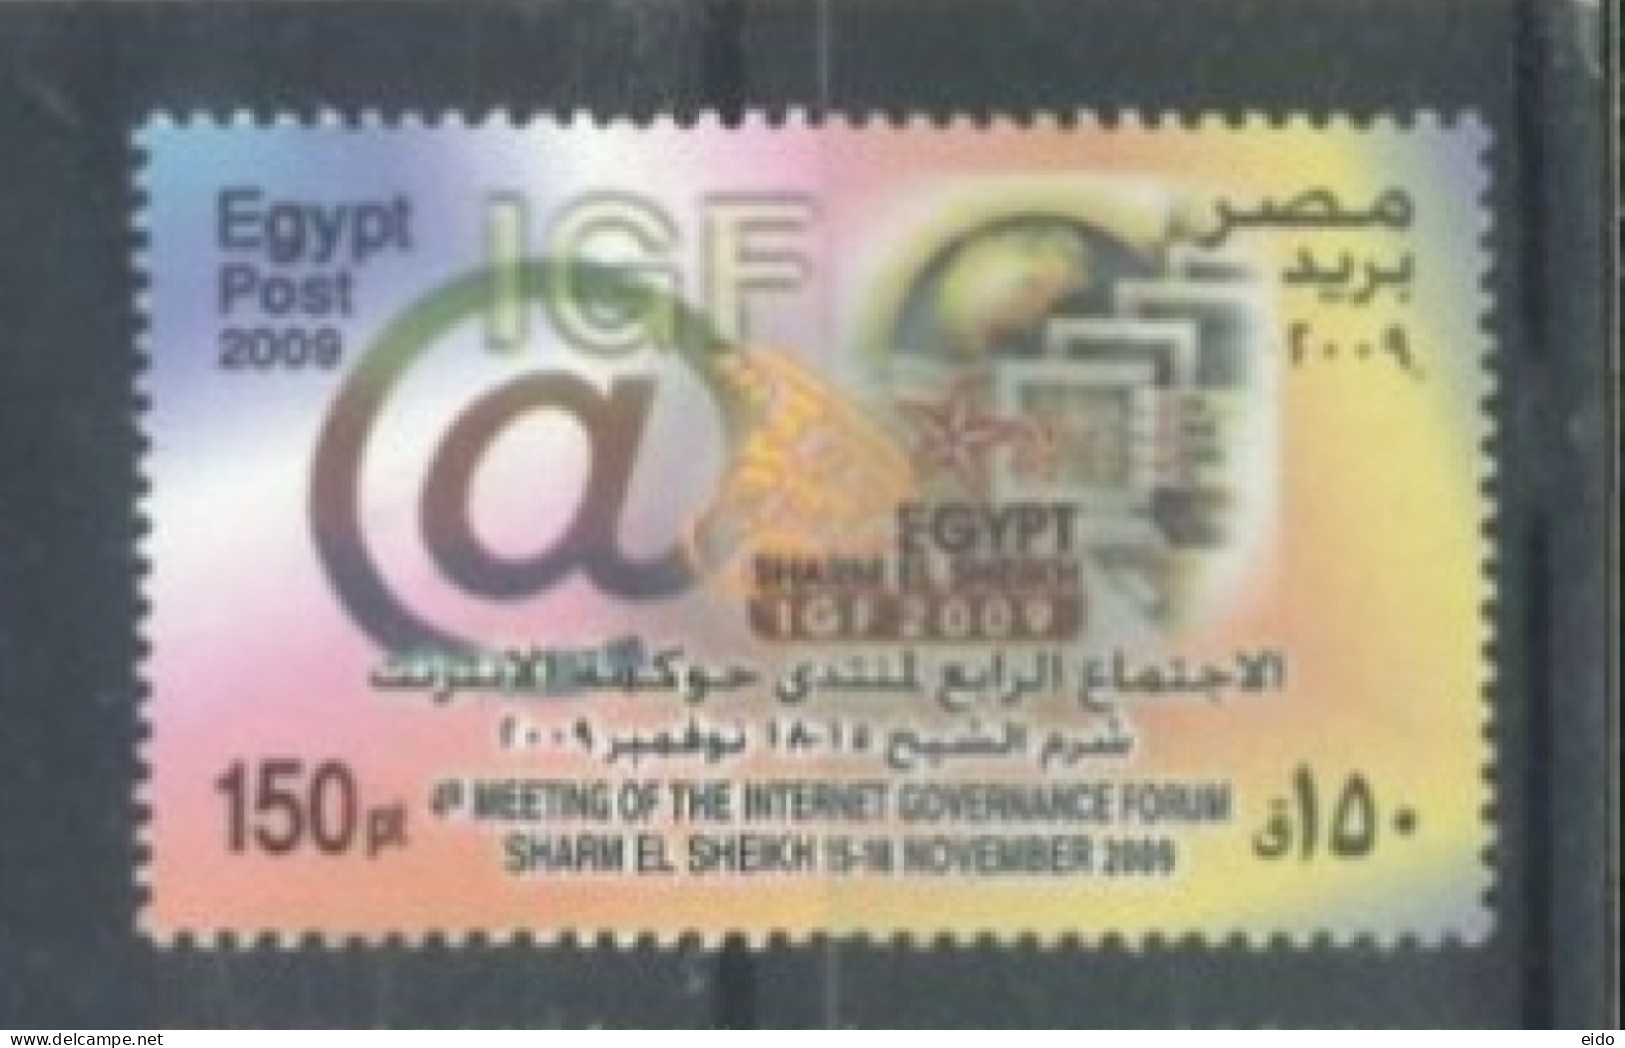 EGYPT - 2009, 4th MEETING OF INTERNET GOVERNANCE FORUM, SHARM EL SHEIKH STAMP UMM (**). - Briefe U. Dokumente